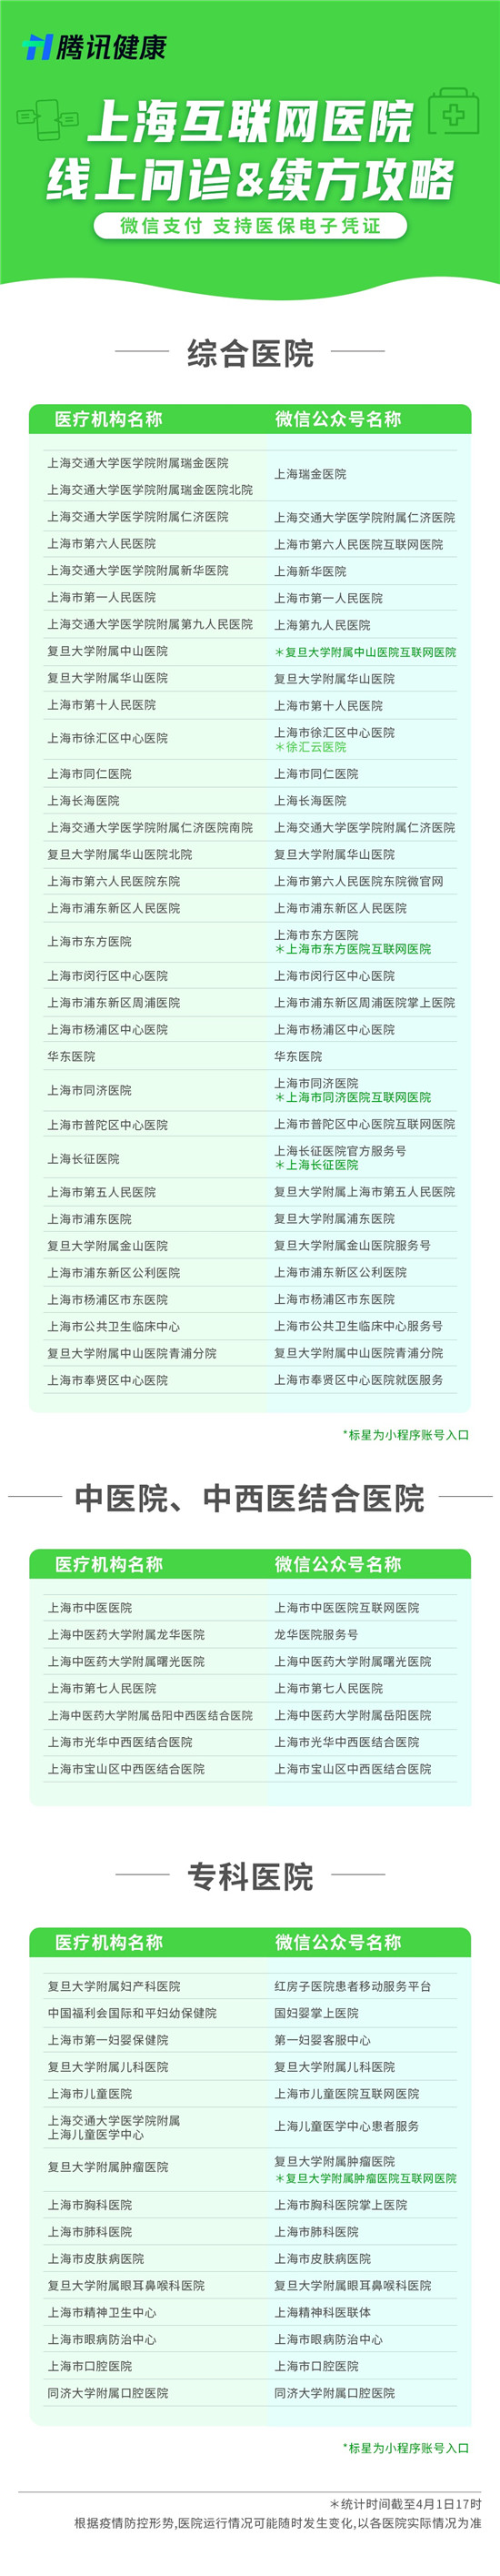 上海已有76家医疗机构互联网医院,线上问诊续方全攻略来了(附详细列表)